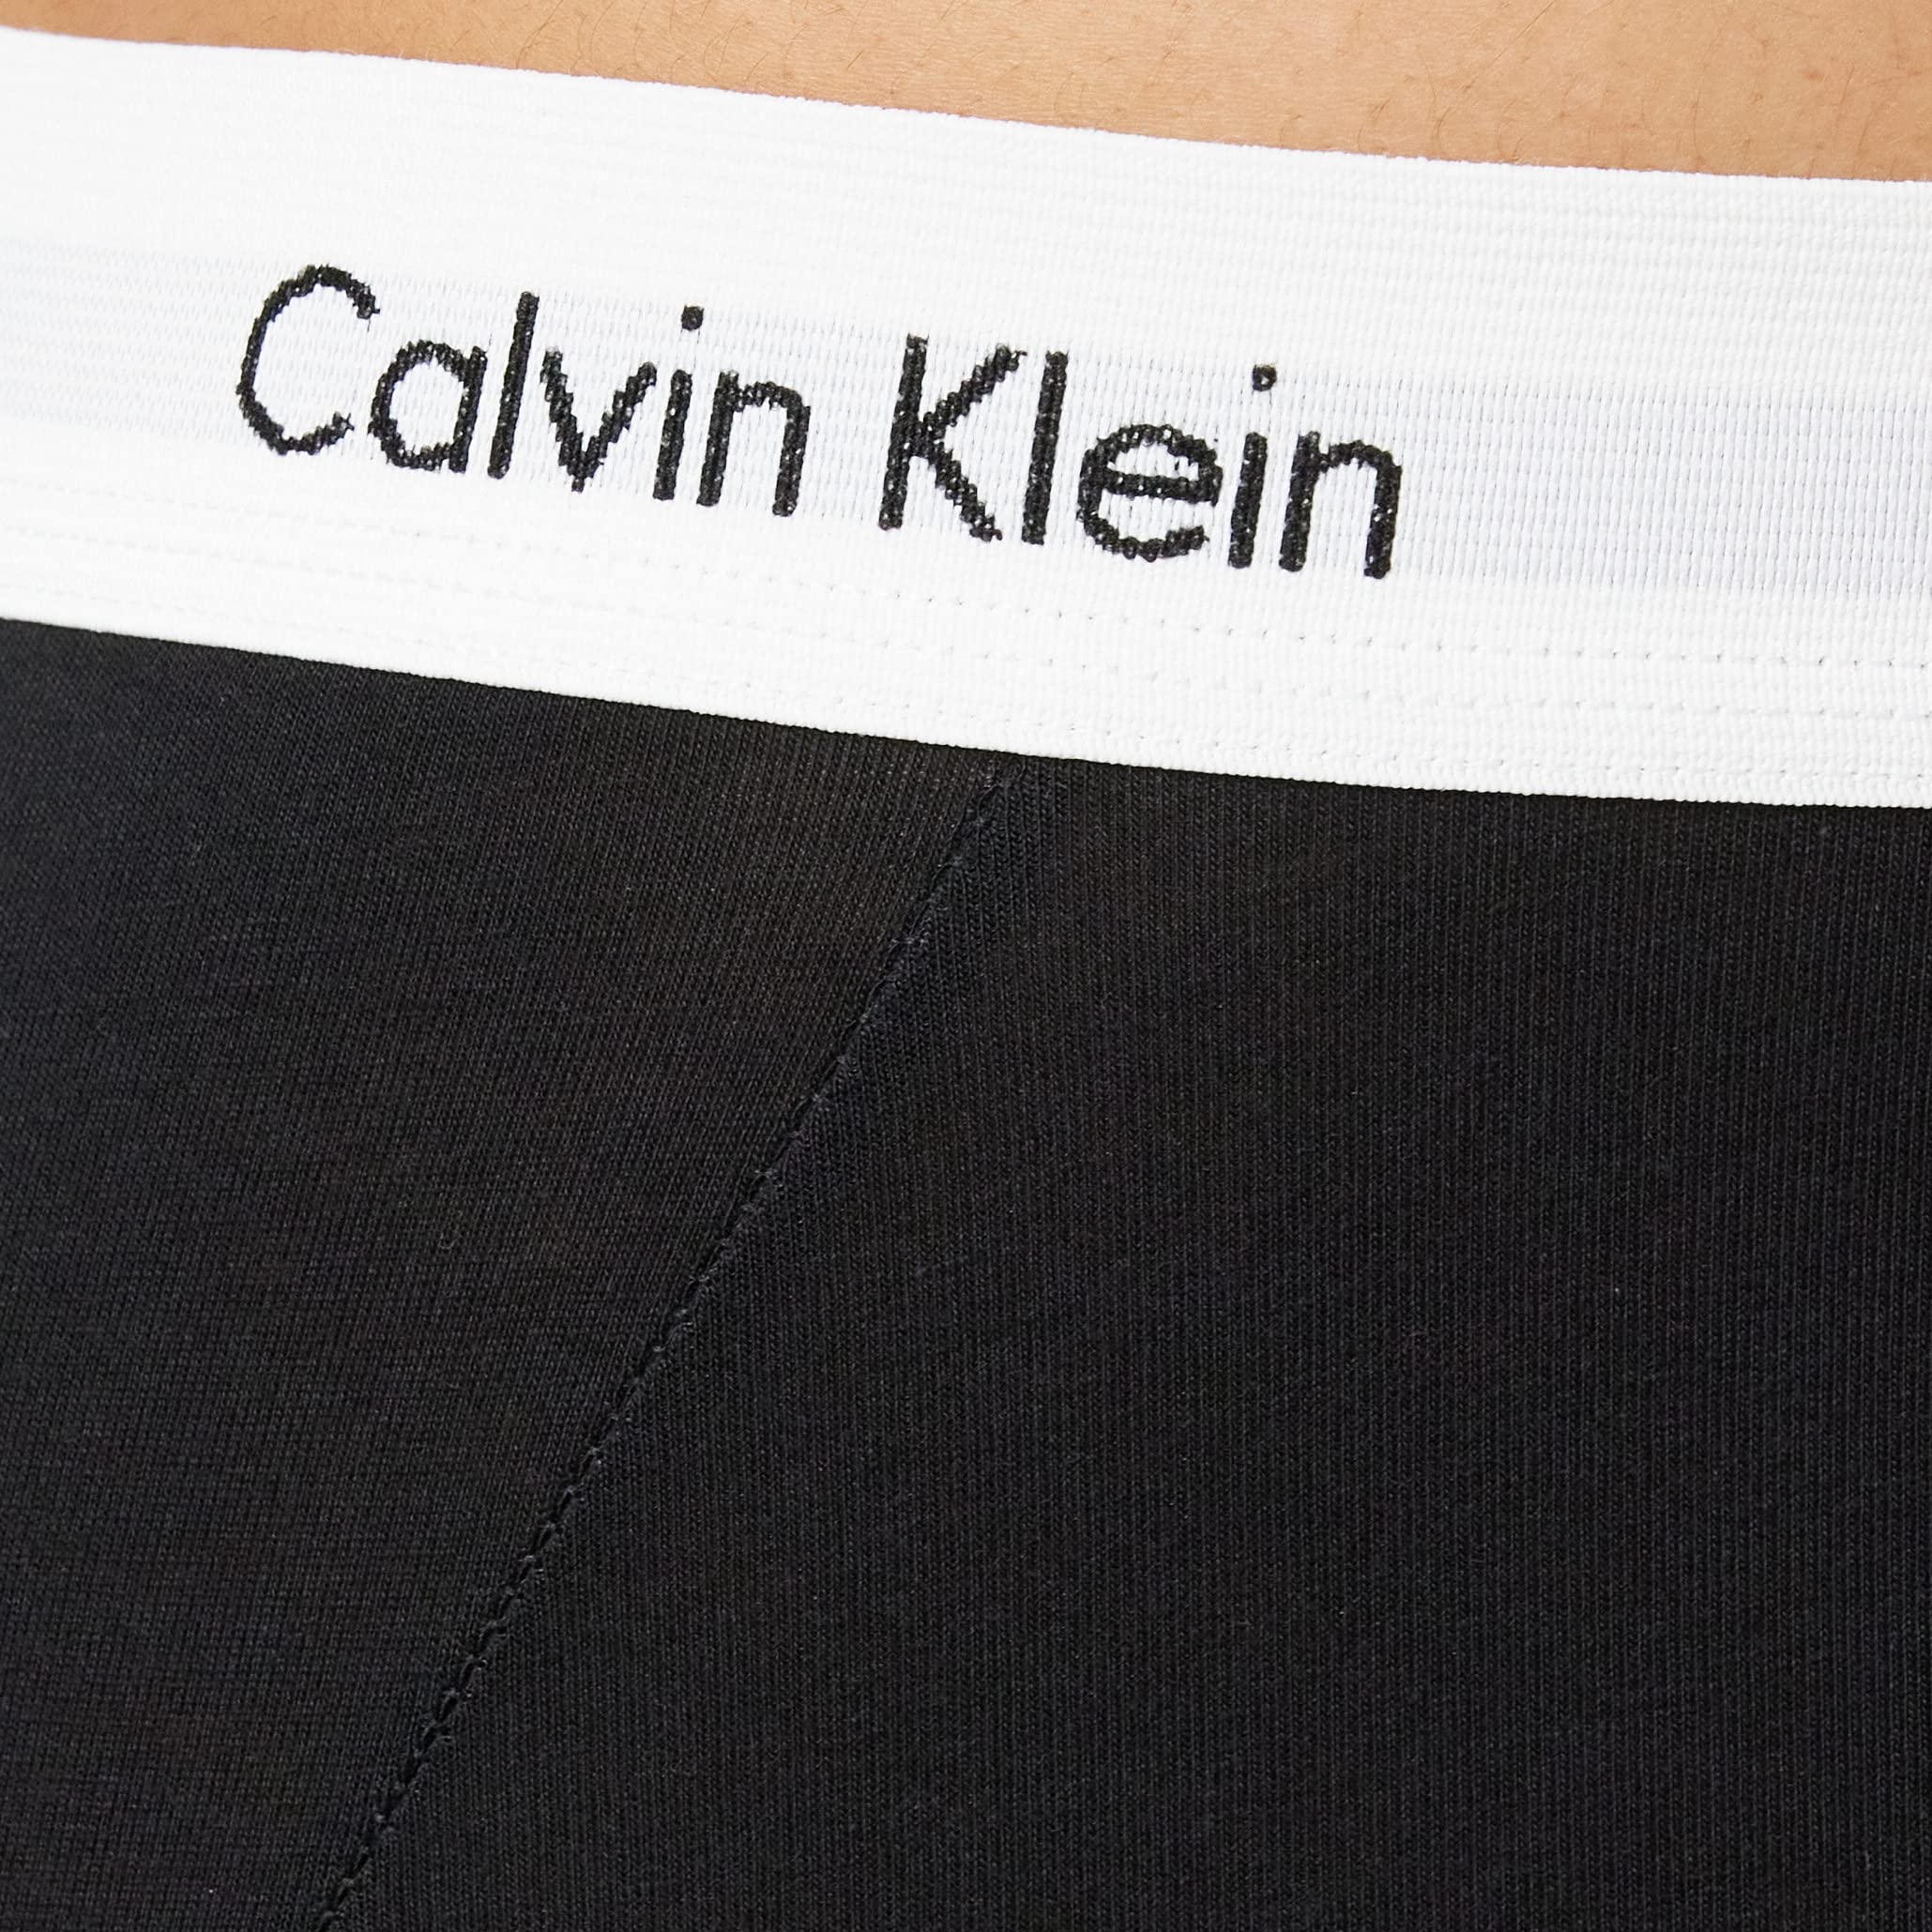 Calvin Klein Men's 3 Pack Low Rise Trunks